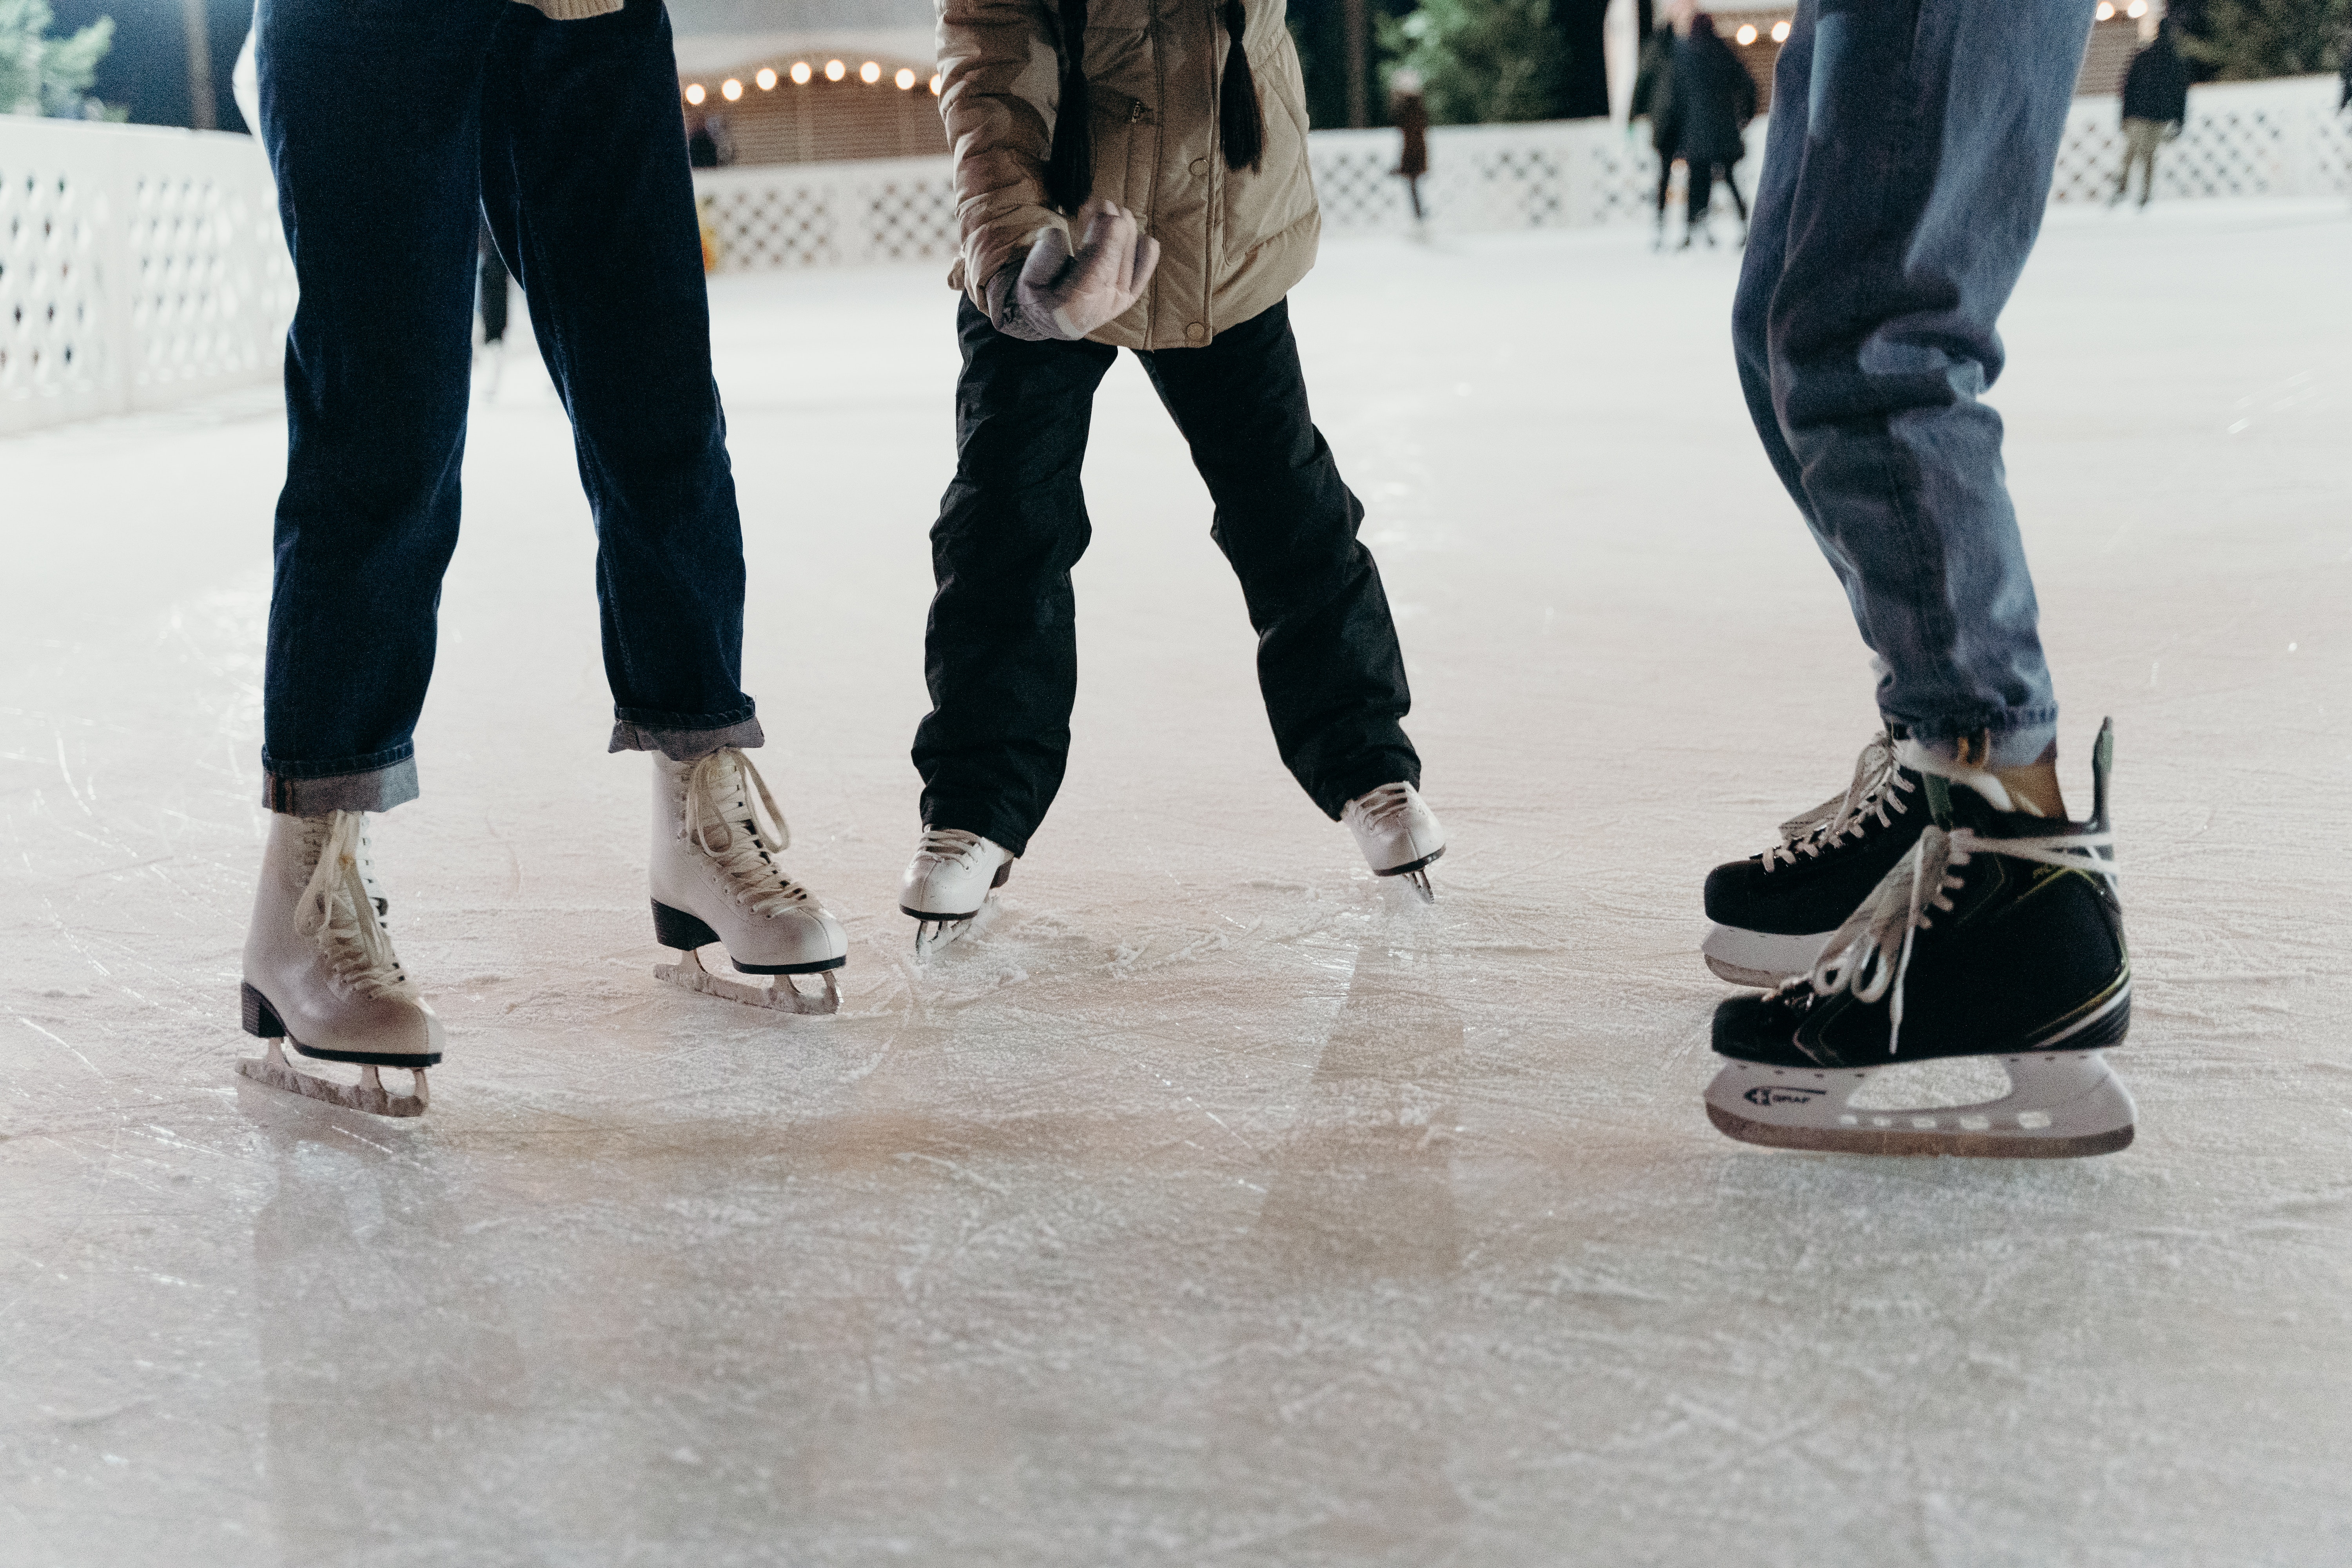 three people ice skating